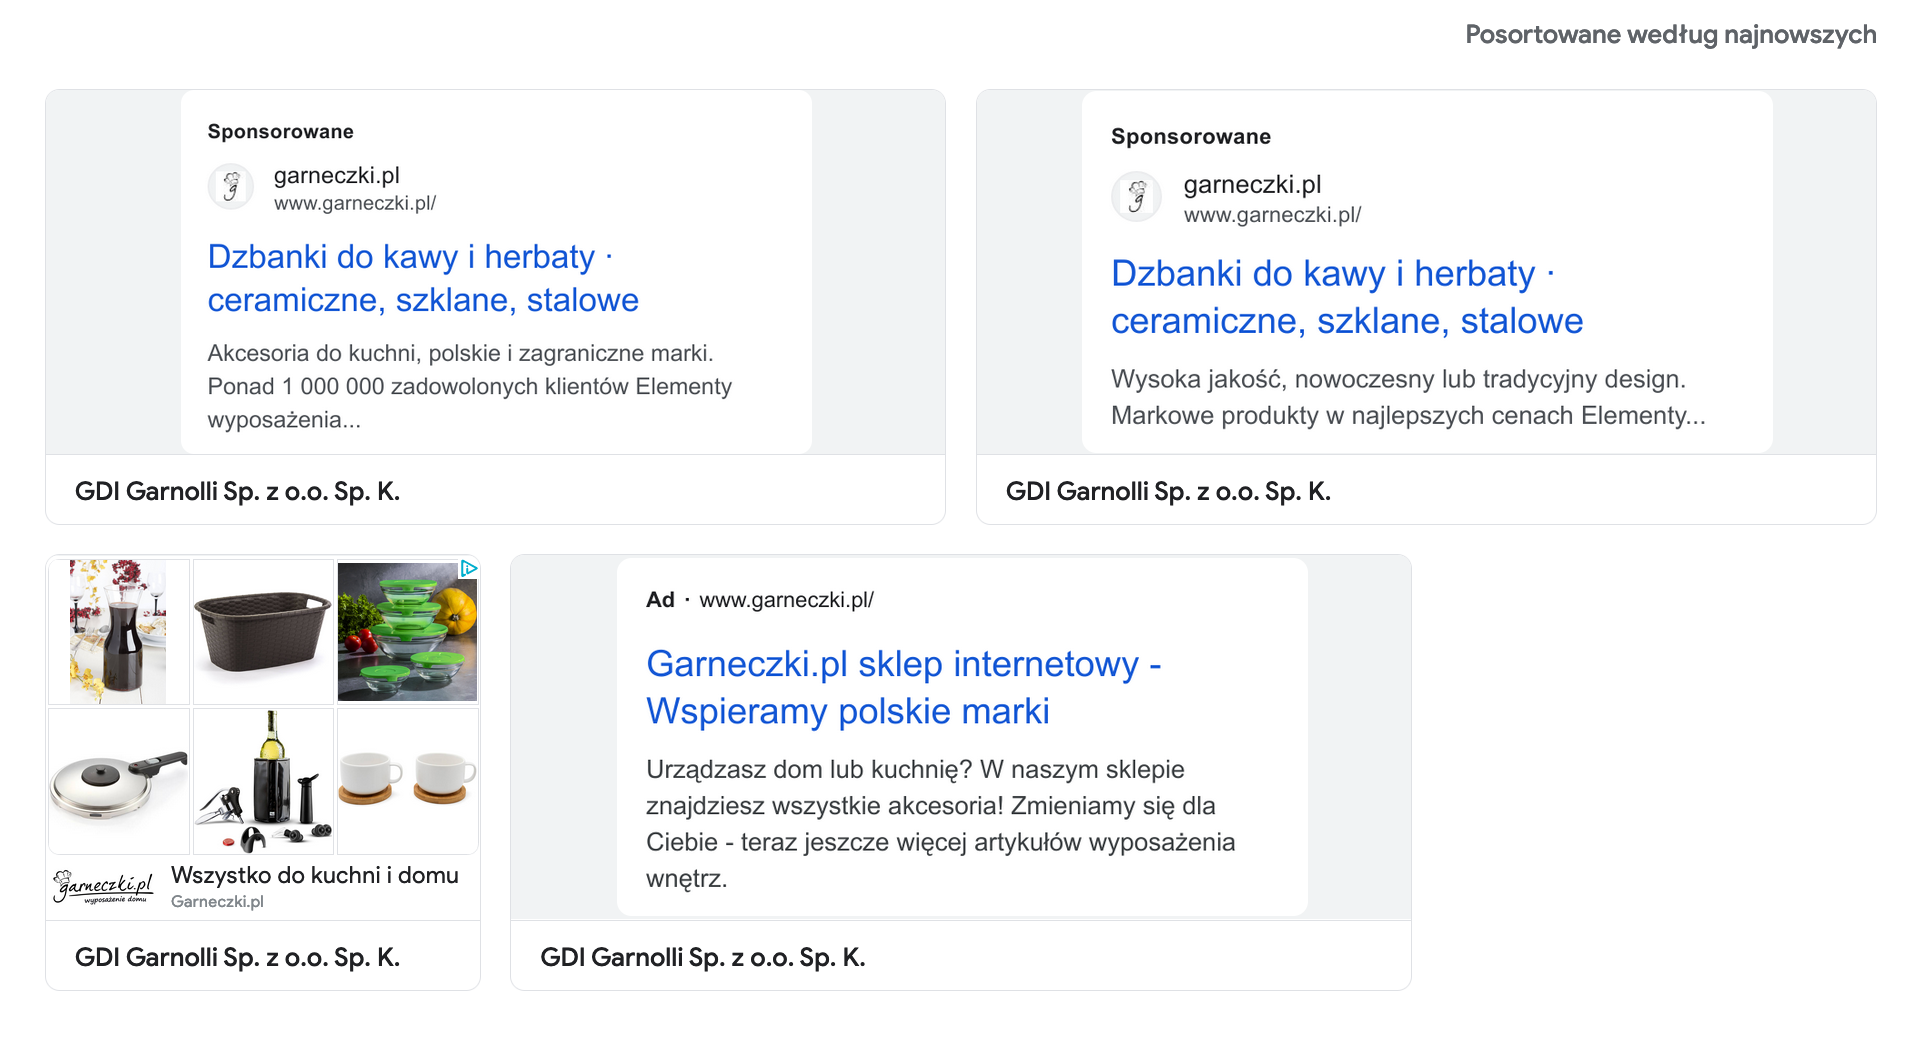 garneczki: centrum reklam google